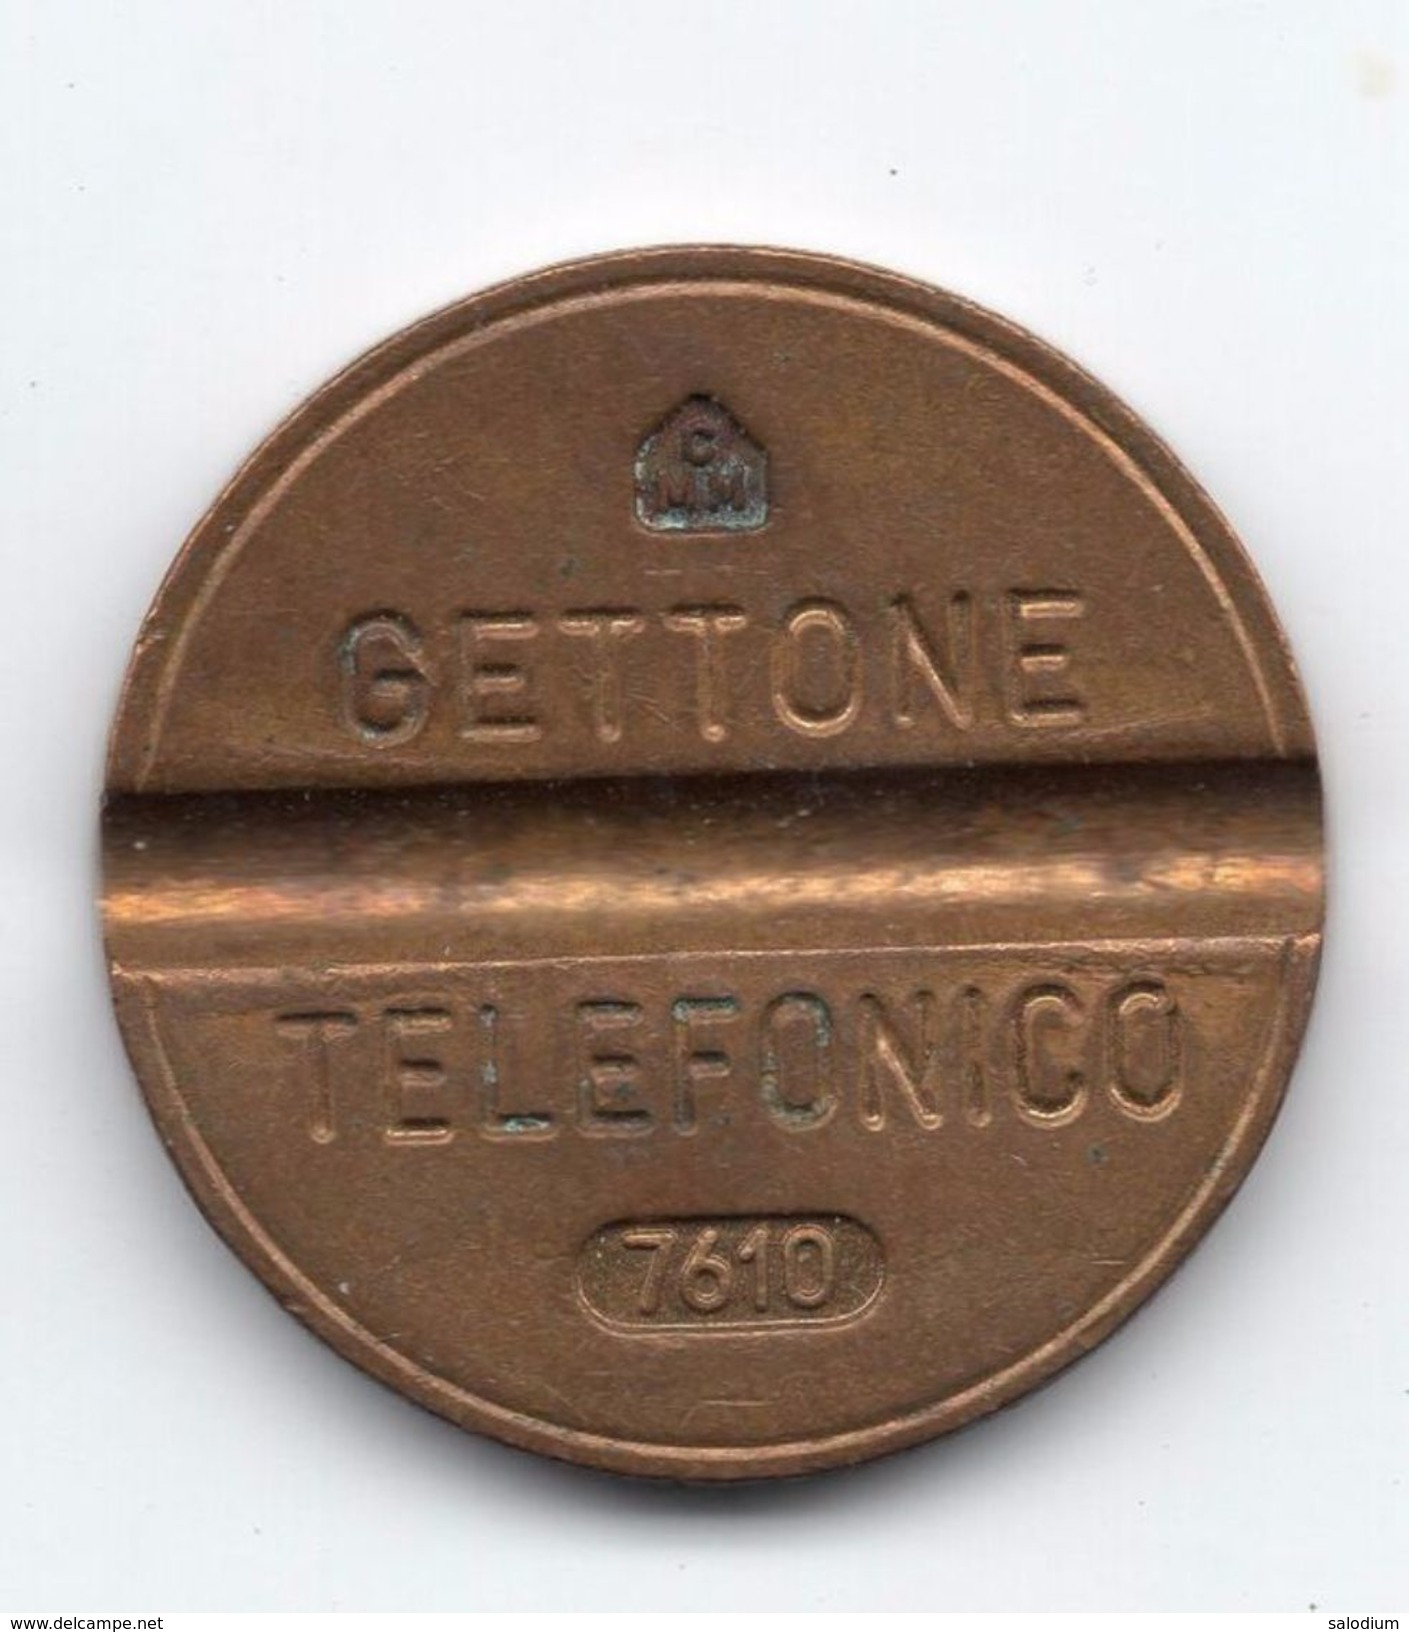 Gettone Telefonico 7610  Token Telephone - (Id-753) - Professionnels/De Société